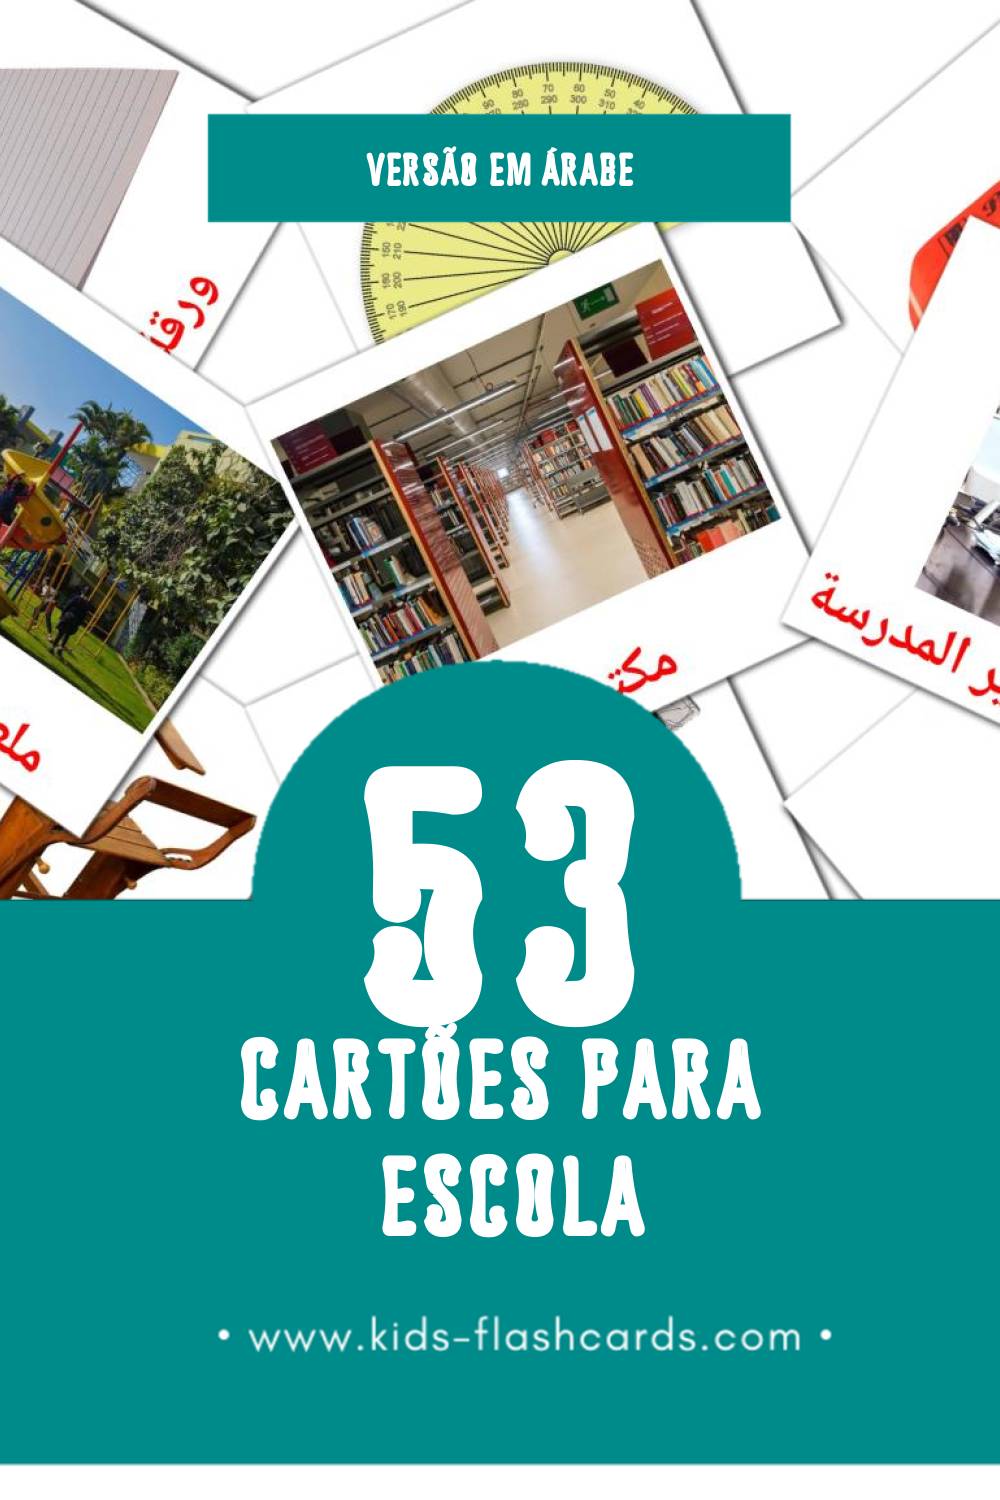 Flashcards de مدرسة Visuais para Toddlers (53 cartões em Árabe)